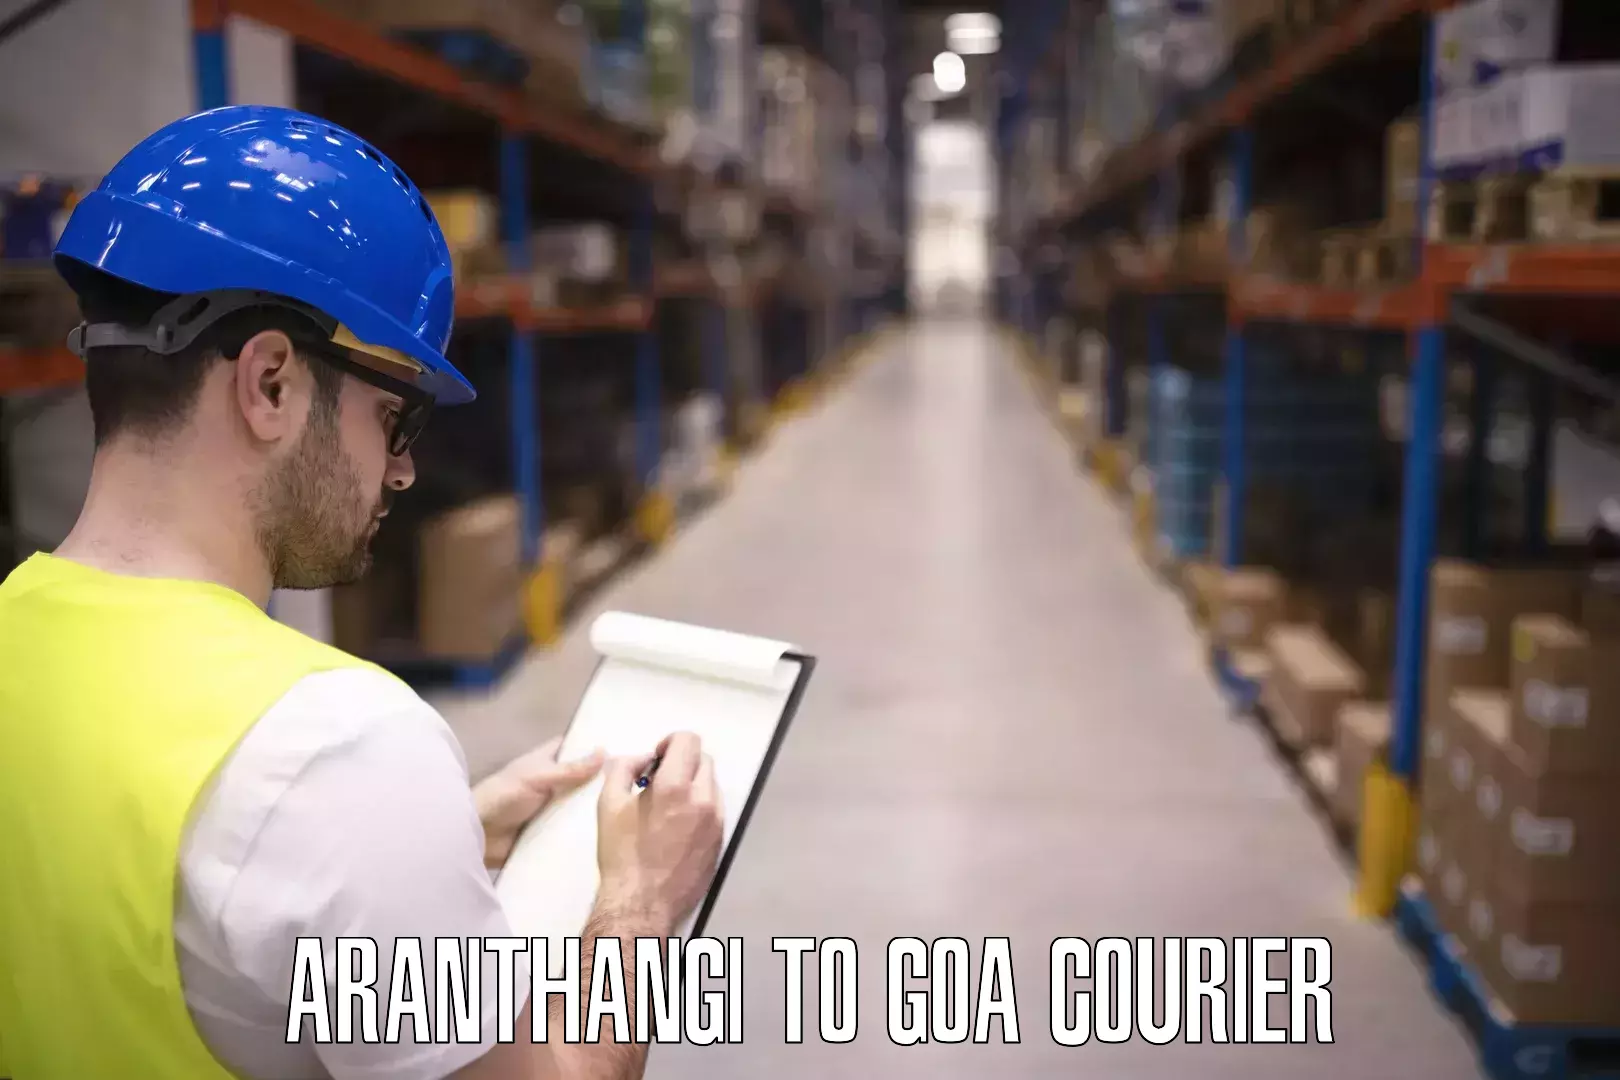 Luggage shipping management Aranthangi to Goa